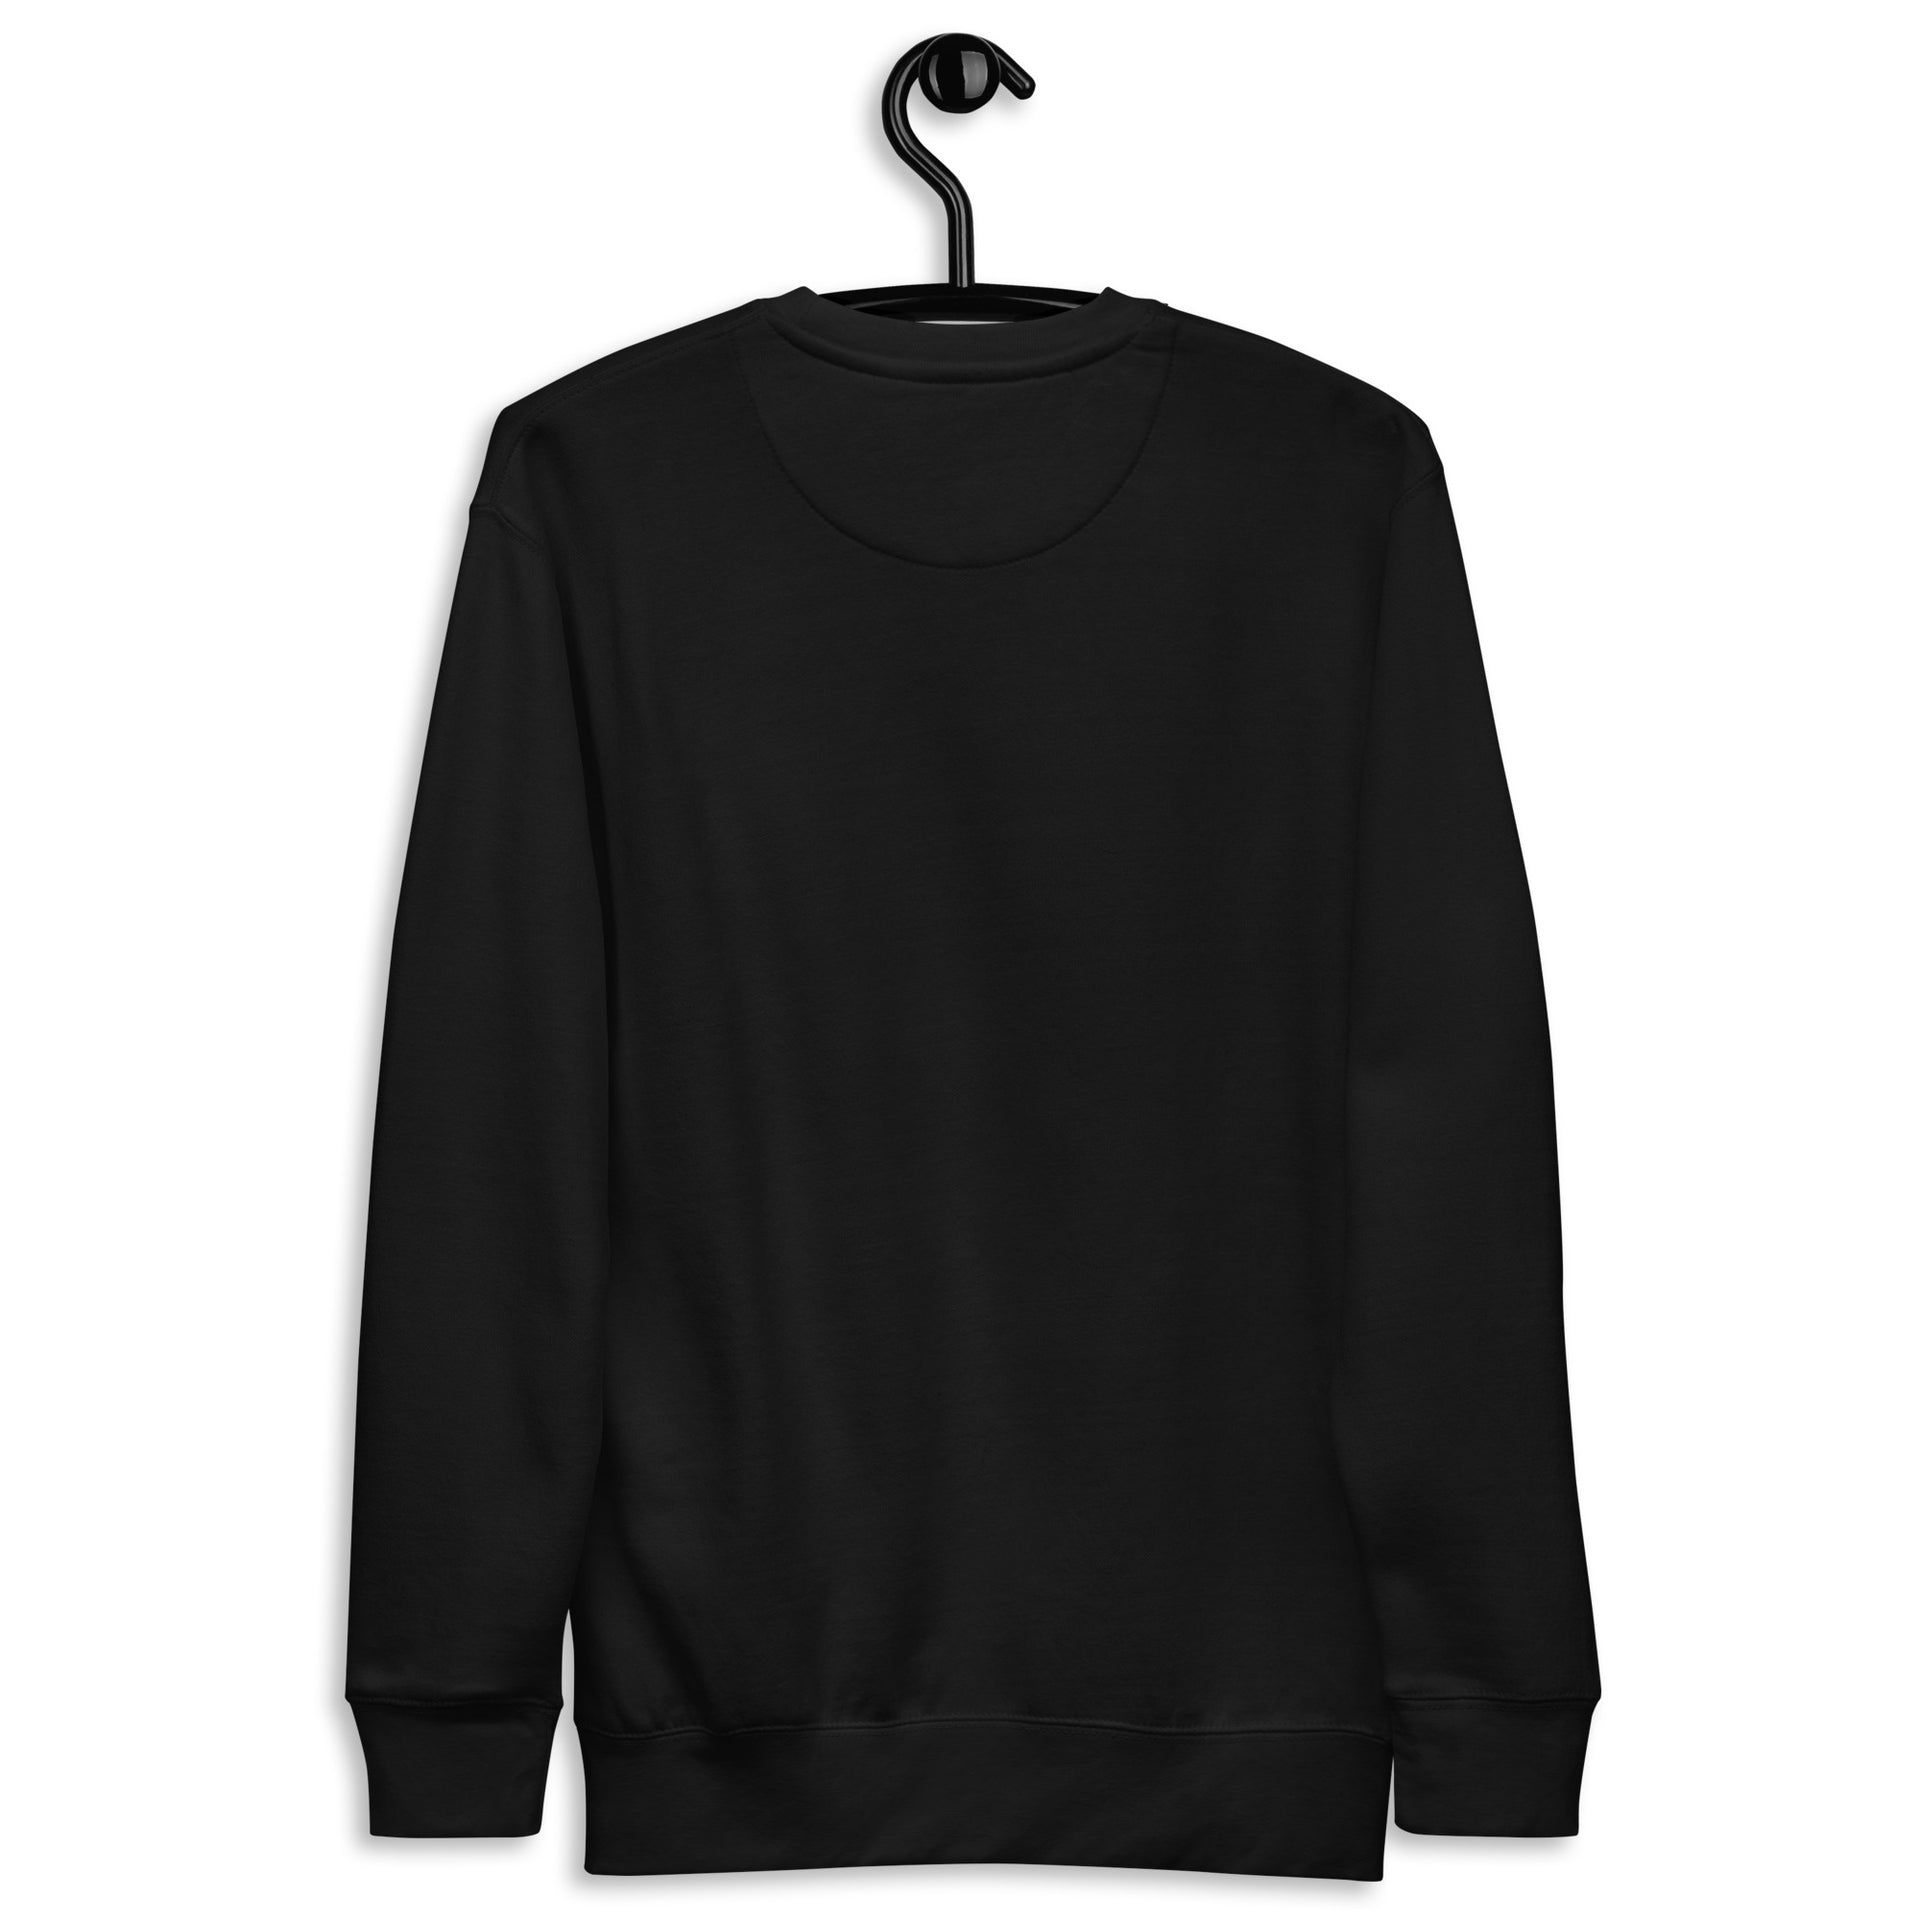 Eternal Love Streetwear Unisex Sweatshirt